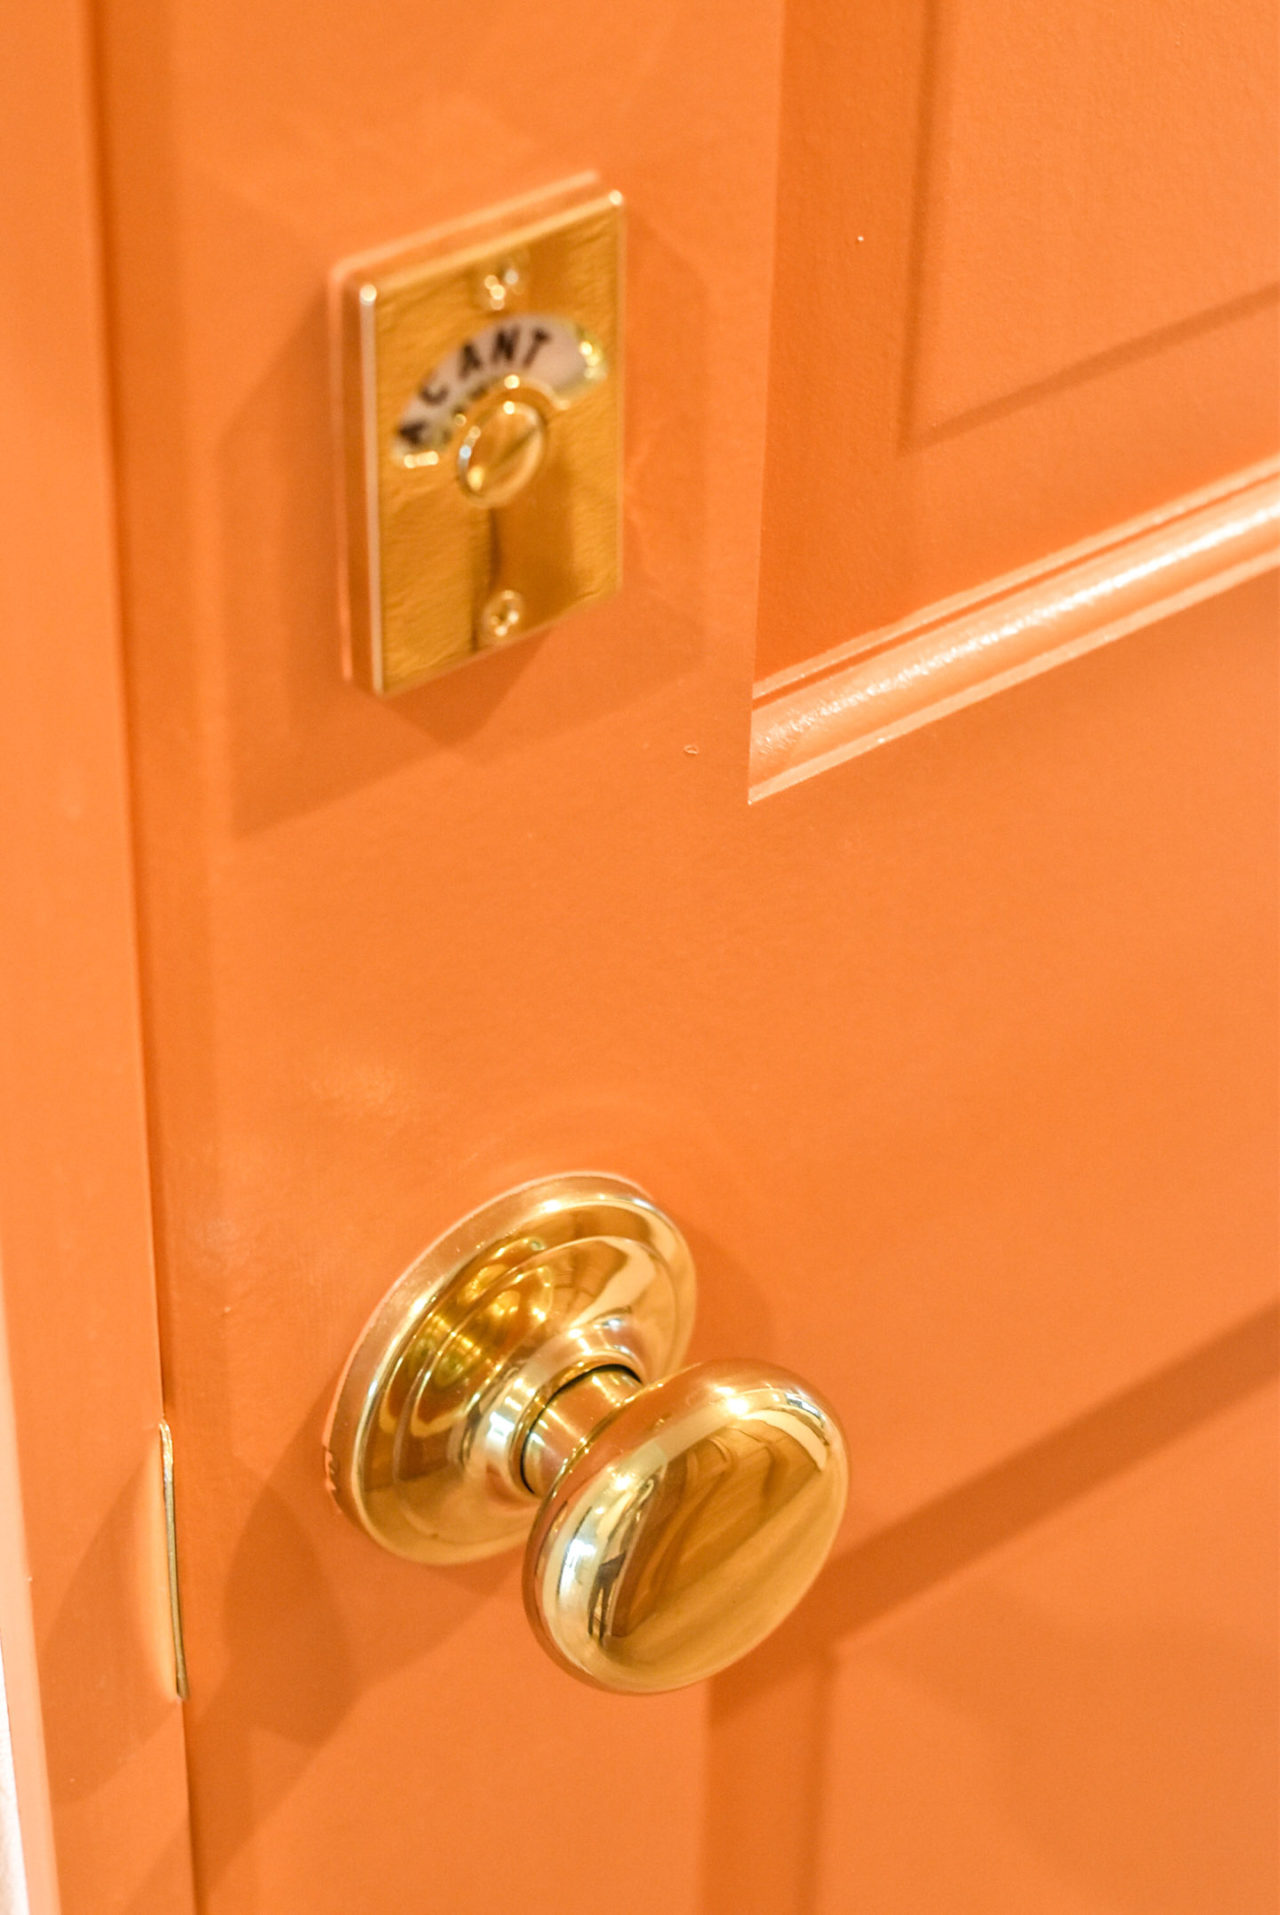 オレンジ色の扉とゴールドのドアノブと表示錠